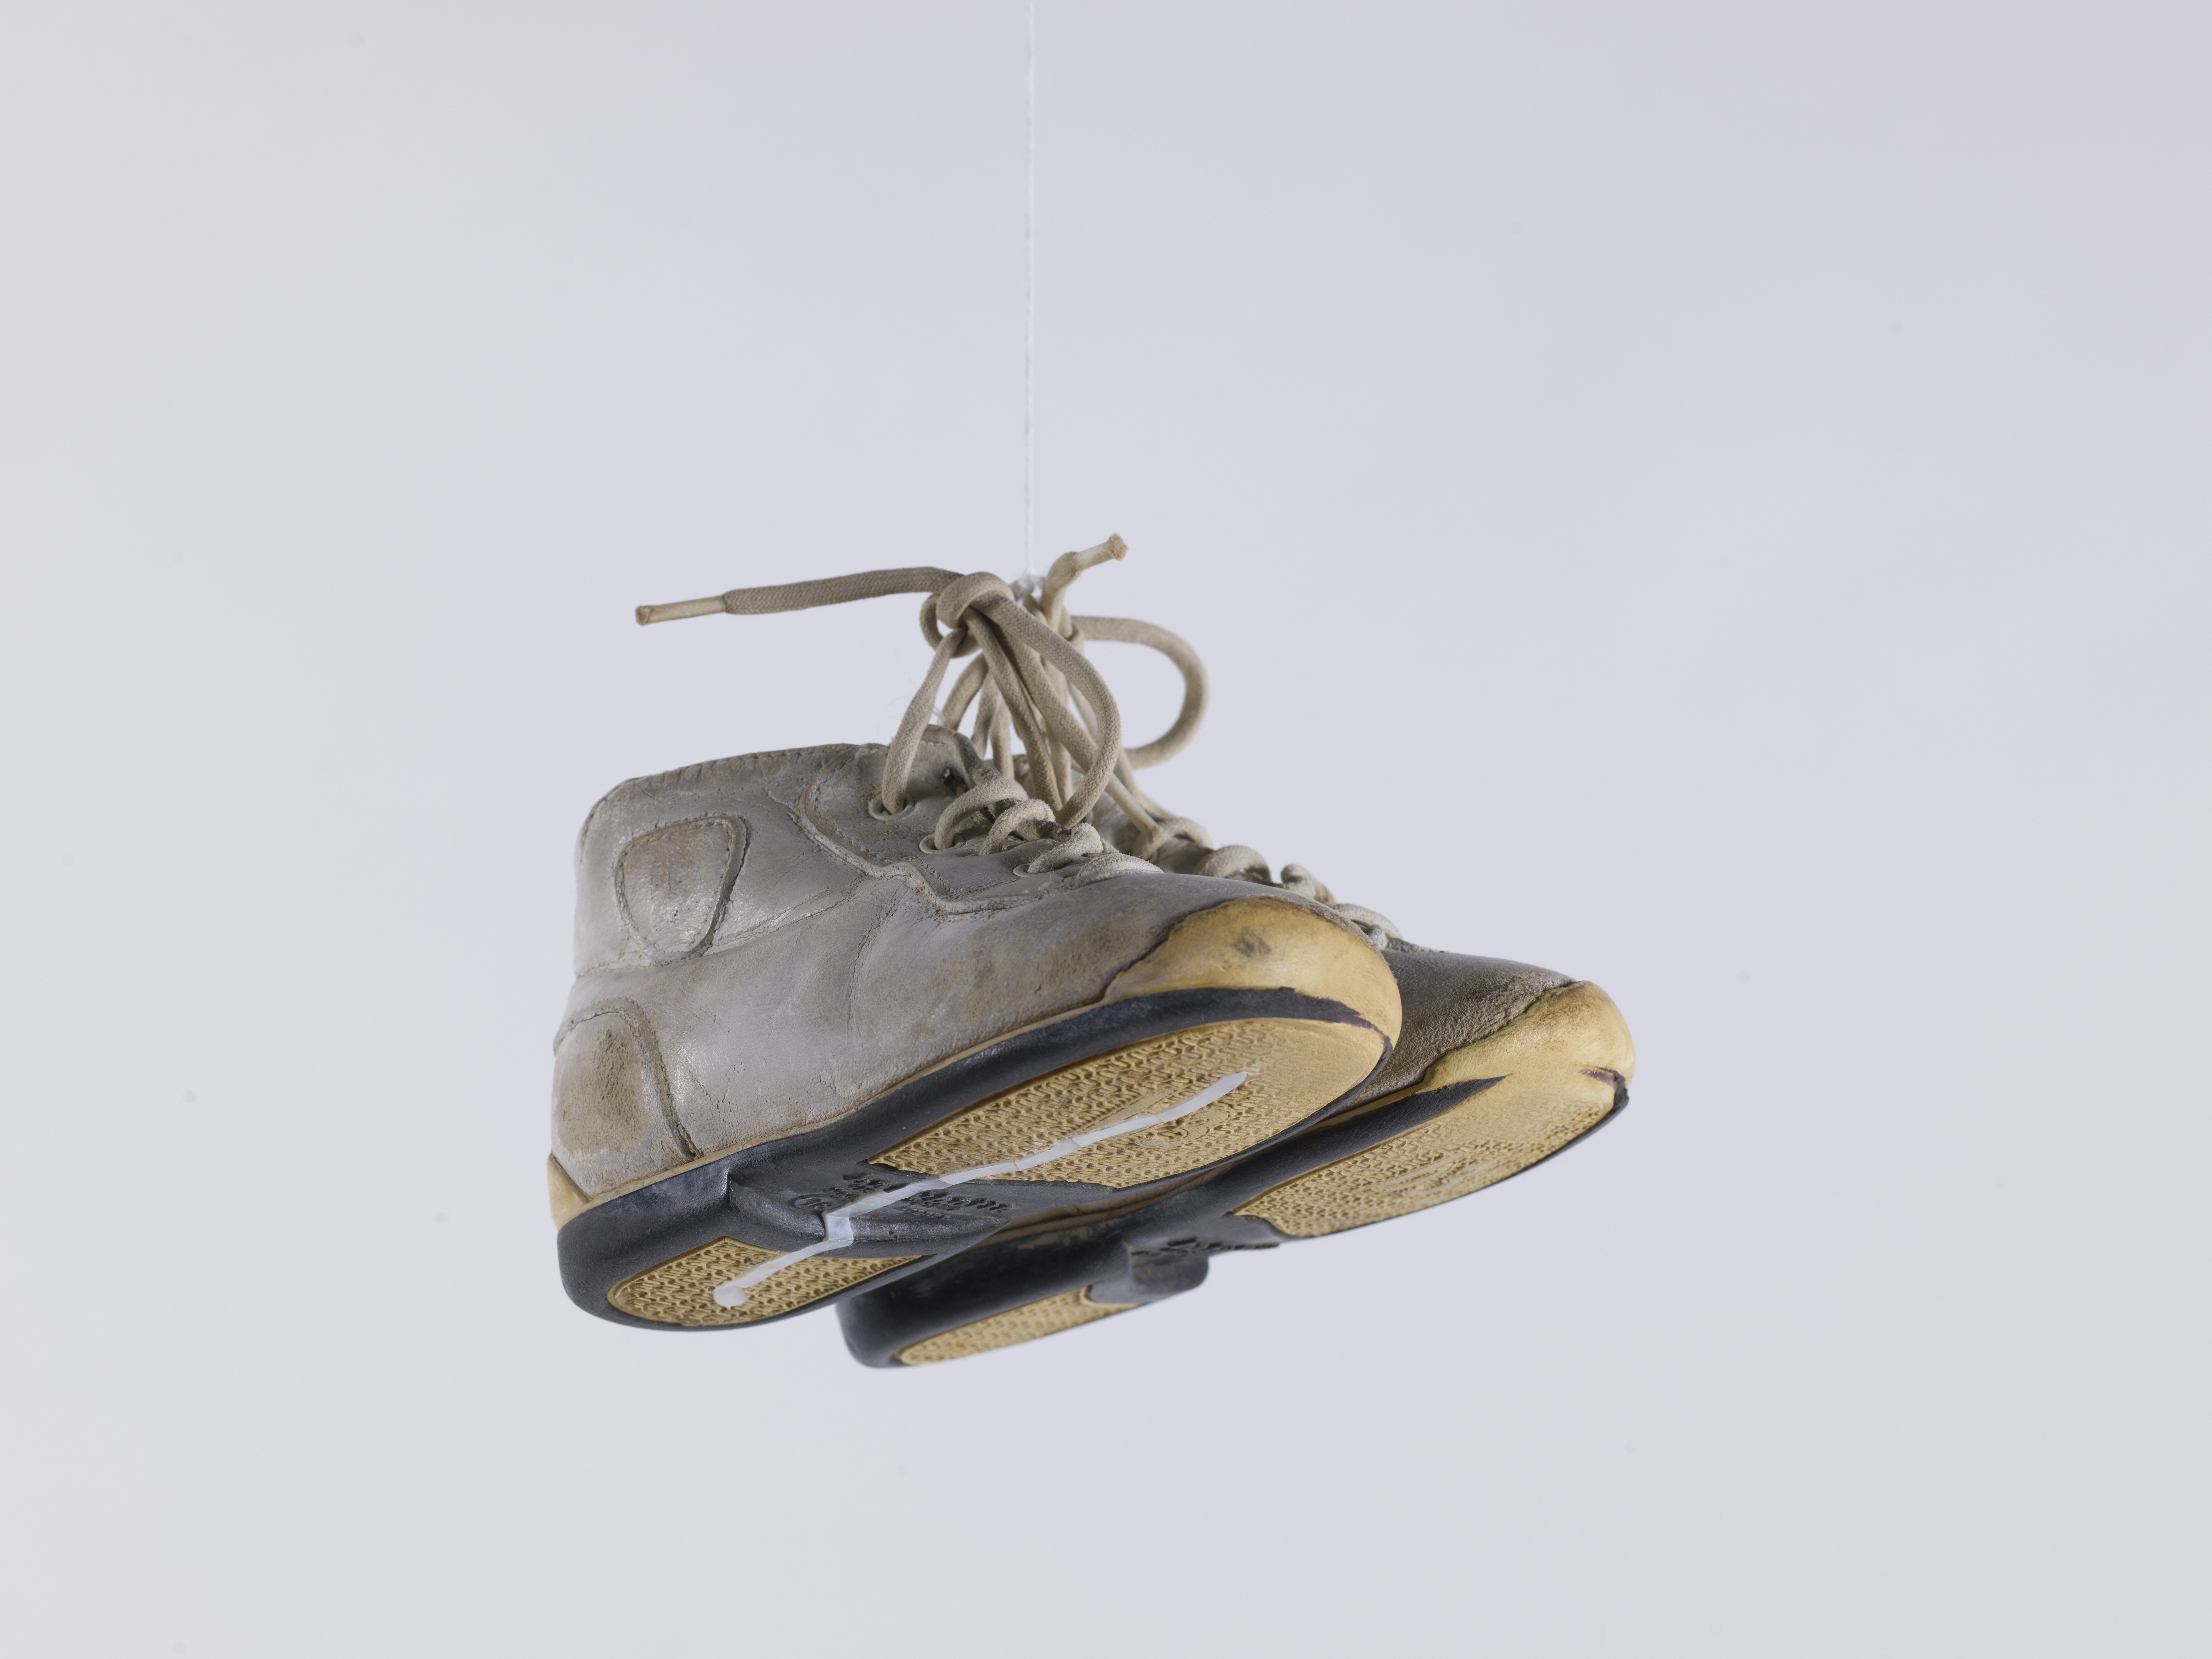 Stéphanie Saadé, [Aller à l'école], 2018, Paire de chaussures d'enfant, nacre, fil de coton, 16 x 26 cm